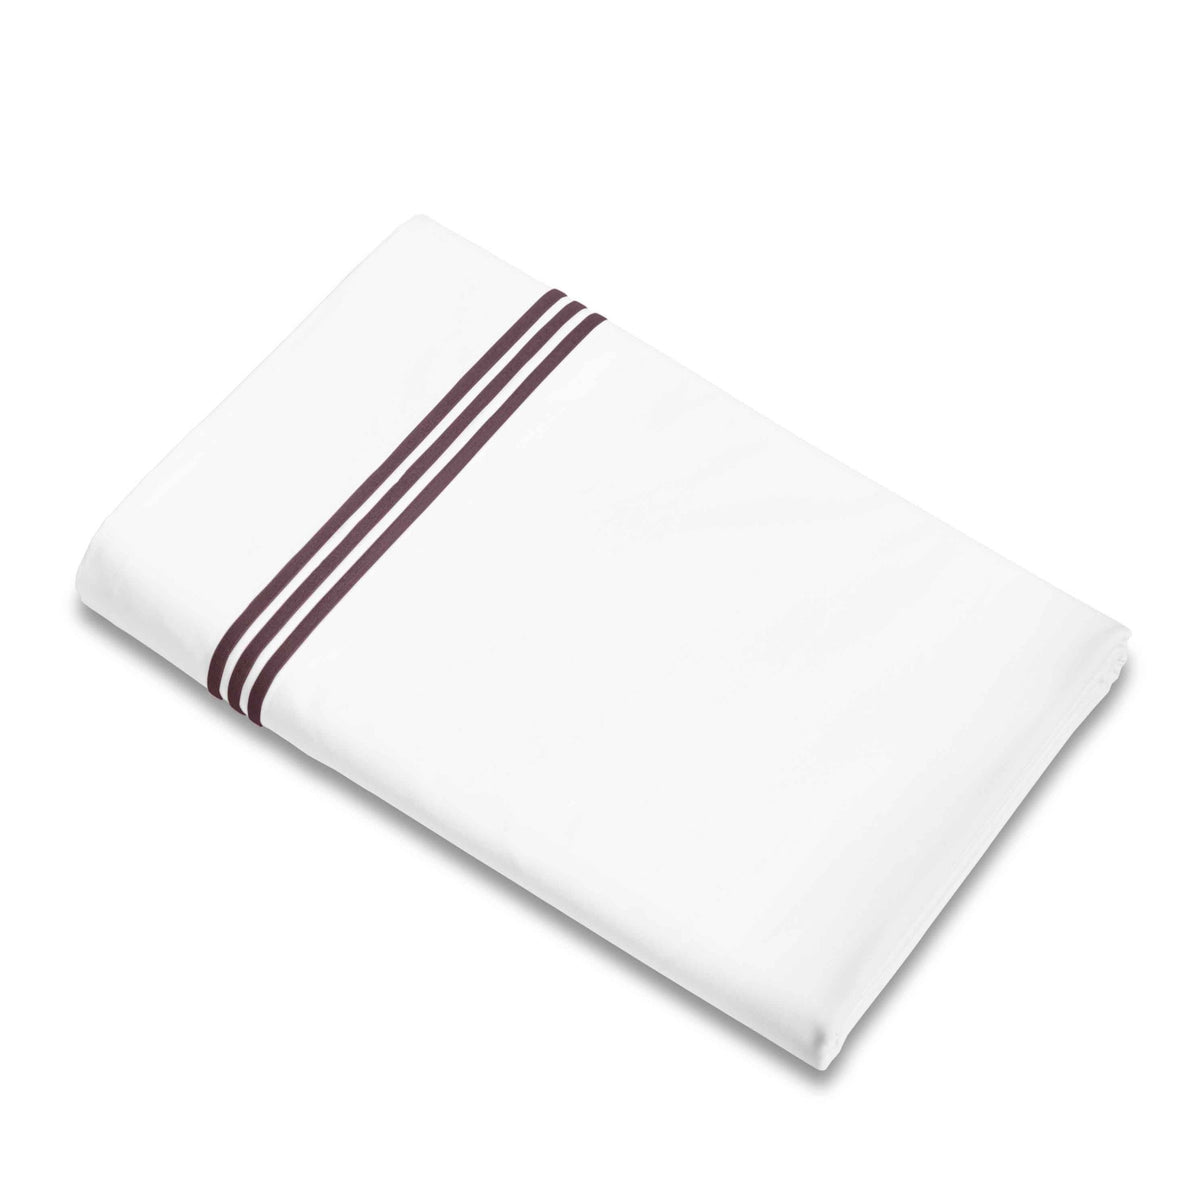 Flat Sheet of Signoria Platinum Percale Bedding in White/Plum Color